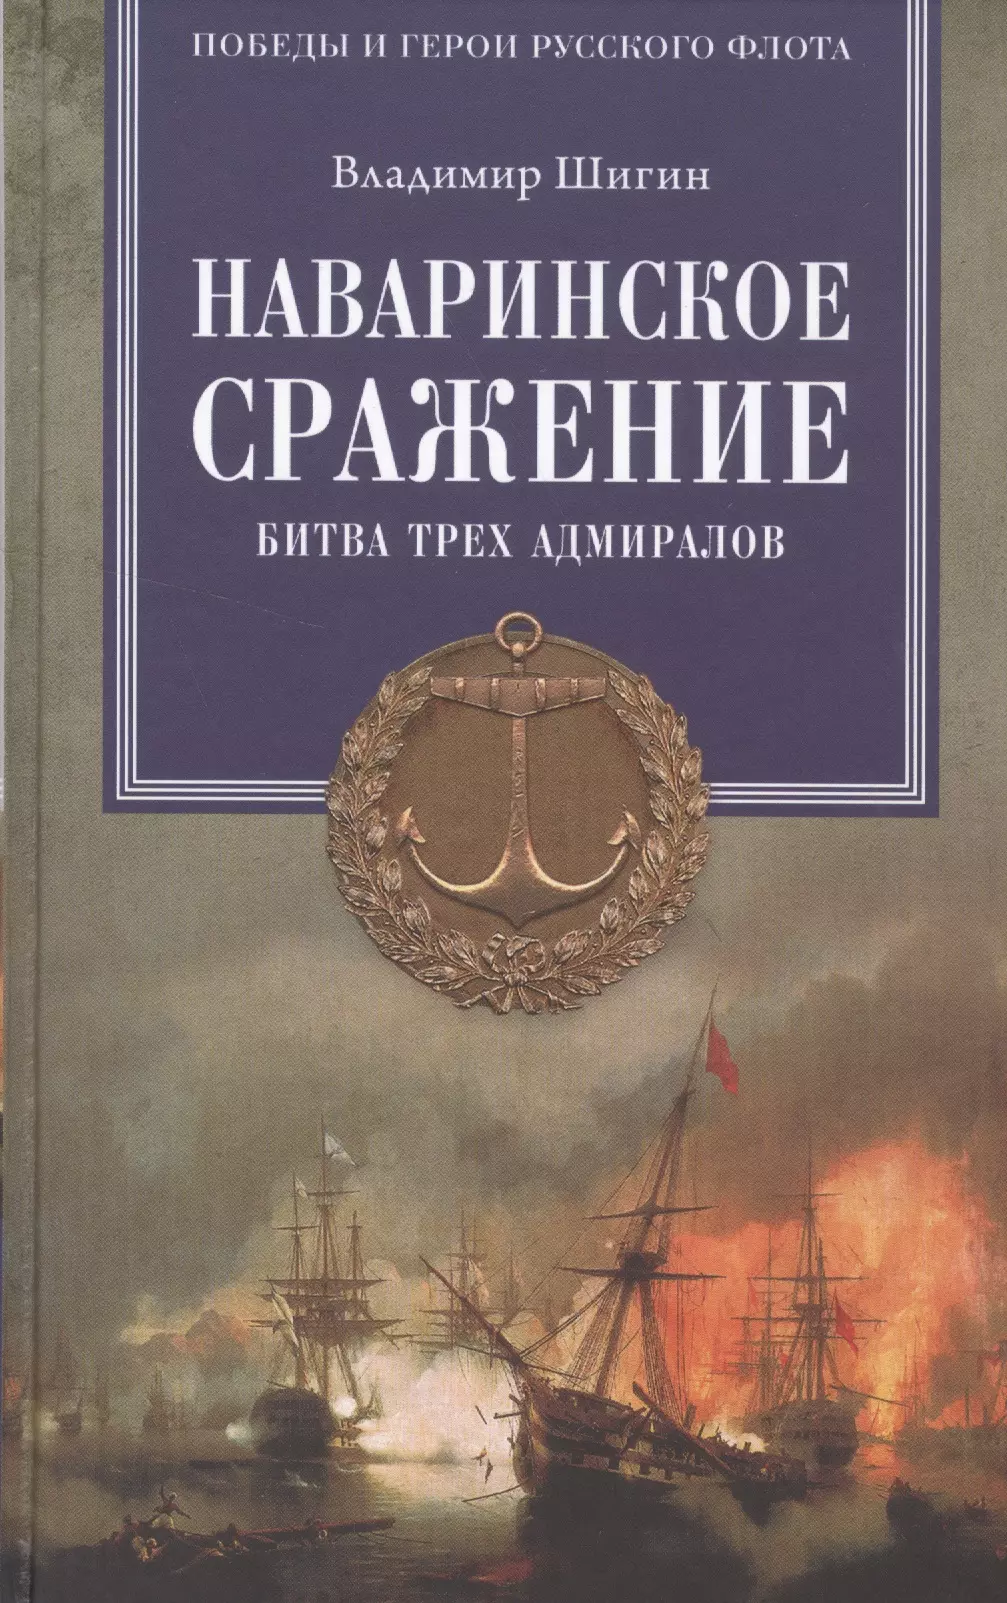 Шигин Владимир Виленович - Наваринское сражение. Битва трех адмиралов